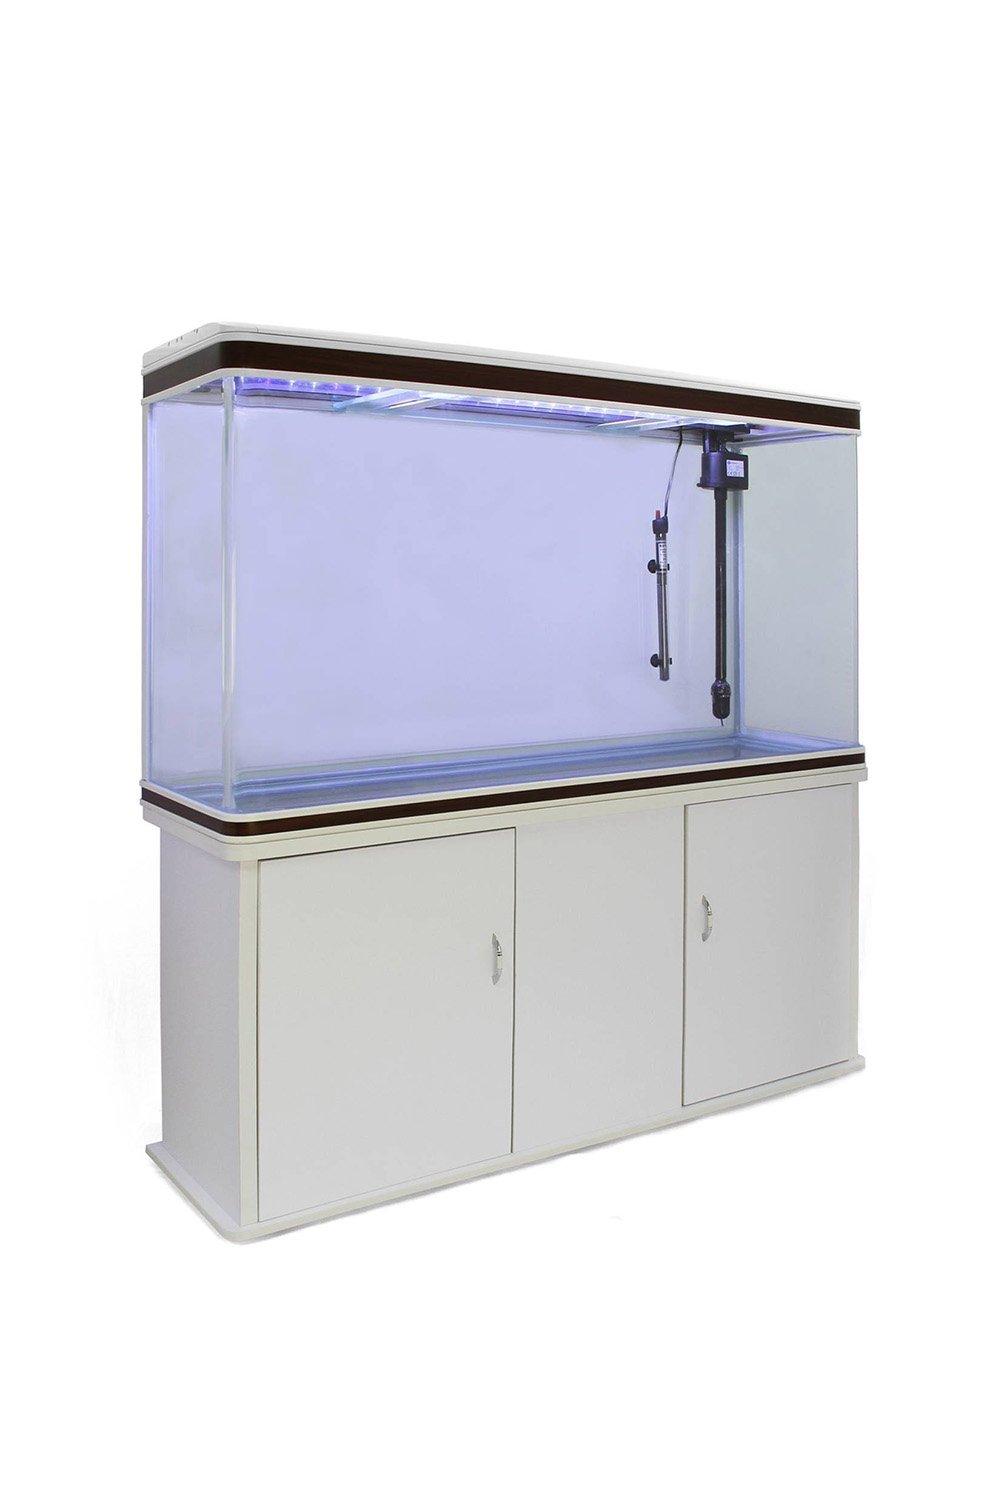 Aquarium Fish Tank & Cabinet - White